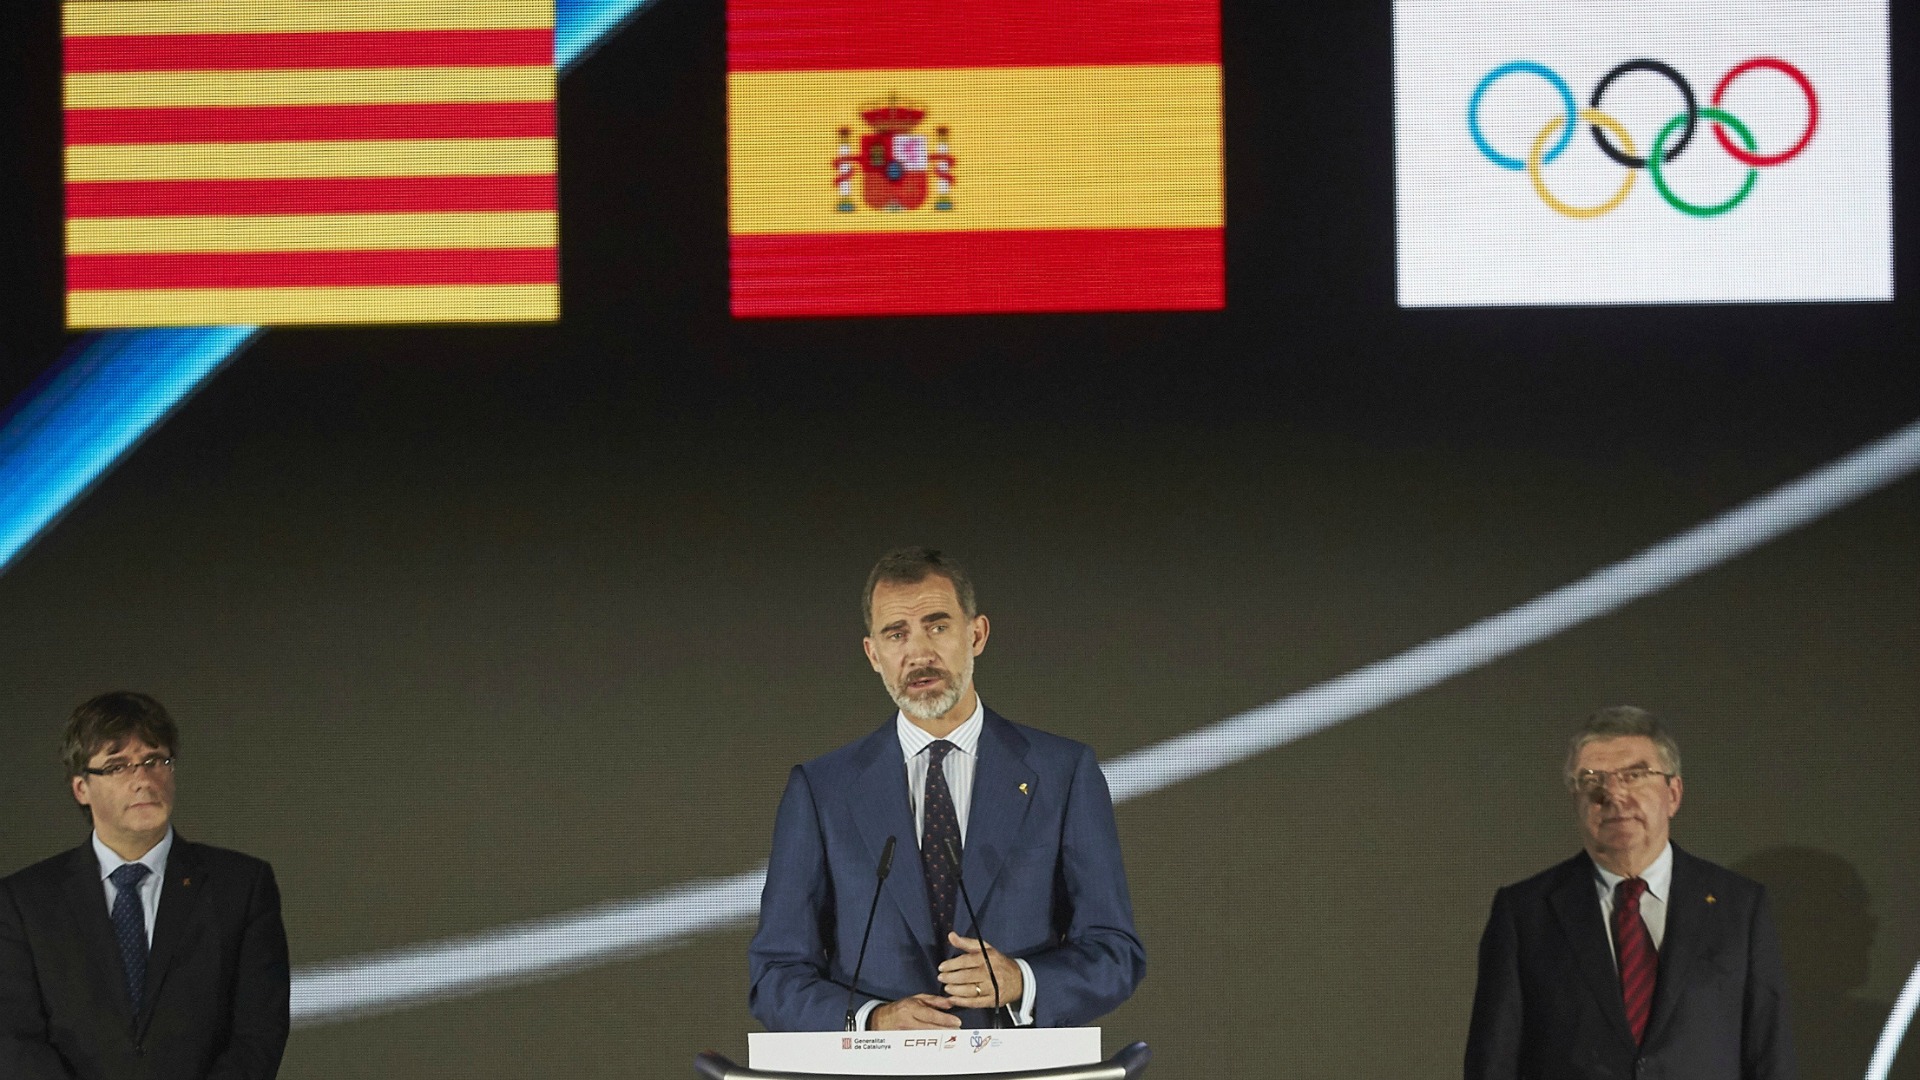 Felipe VI preside varios actos para conmemorar el 25 aniversario de Barcelona 92